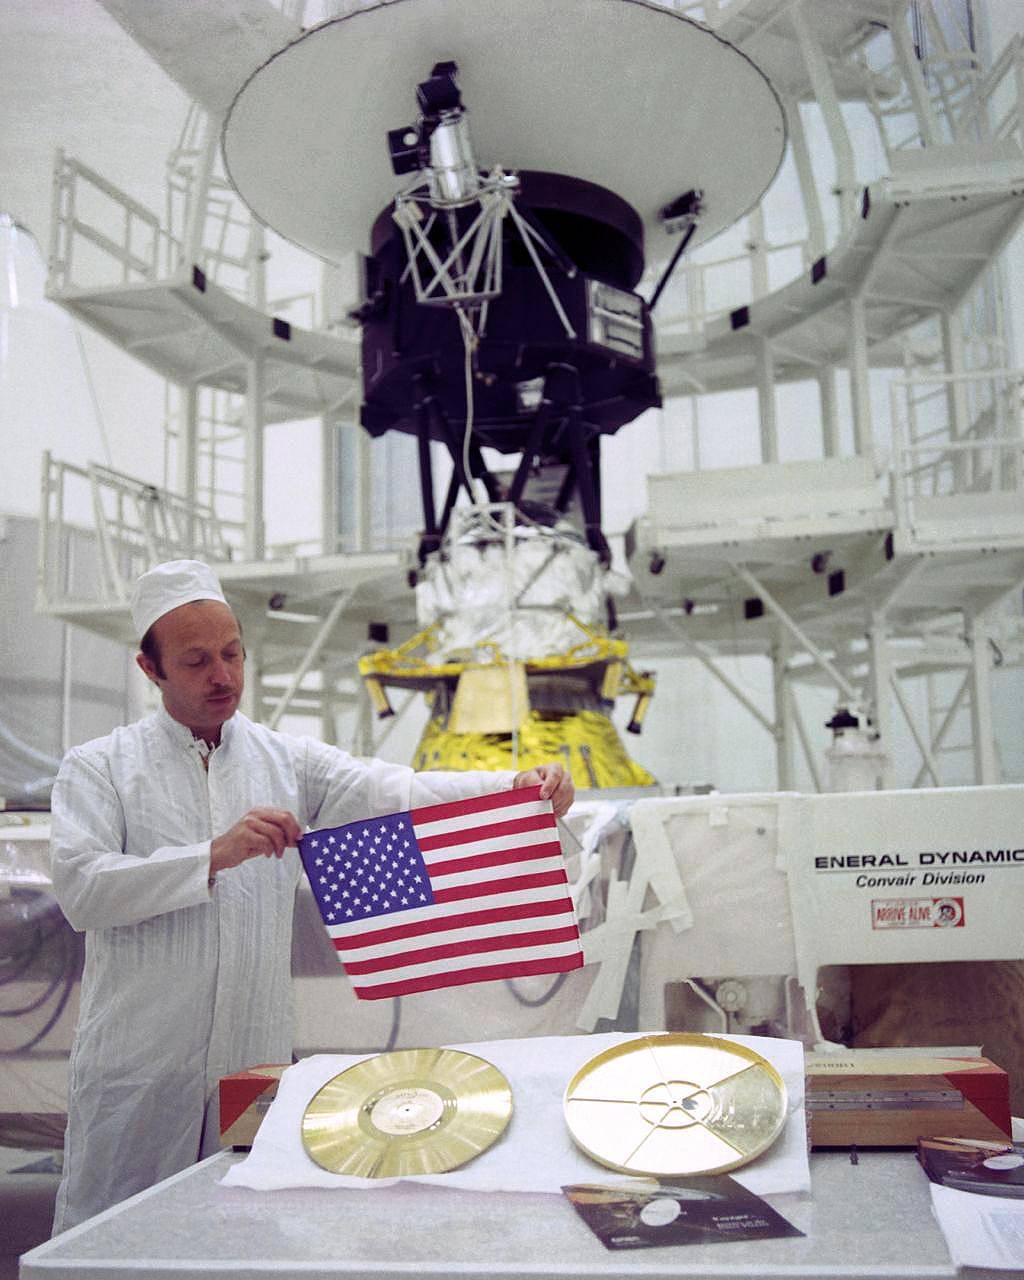 A medida que las dos sondas espaciales Voyager de la NASA viajan al espacio profundo, transportan una pequeña bandera estadounidense y un Disco de Oro repleto de imágenes y sonidos, recuerdos de nuestro planeta natal. Esta imagen muestra a John Casani, Gerente del proyecto Voyager en 1977, sosteniendo la pequeña bandera que fue doblada y cosida en las mantas térmicas de la nave Voyager antes de su lanzamiento. Debajo de Casani se puede ver el Disco Dorado (izquierda) y su cubierta (derecha). Al fondo se encuentra la sonda Voyager 2 antes de ser llevada a la plataforma de lanzamiento. La foto fue tomada en la base de Cabo Cañaveral, Florida (EUA), el 4 de Agosto de 1977. Crédito de la imagen: NASA / JPL-Caltech